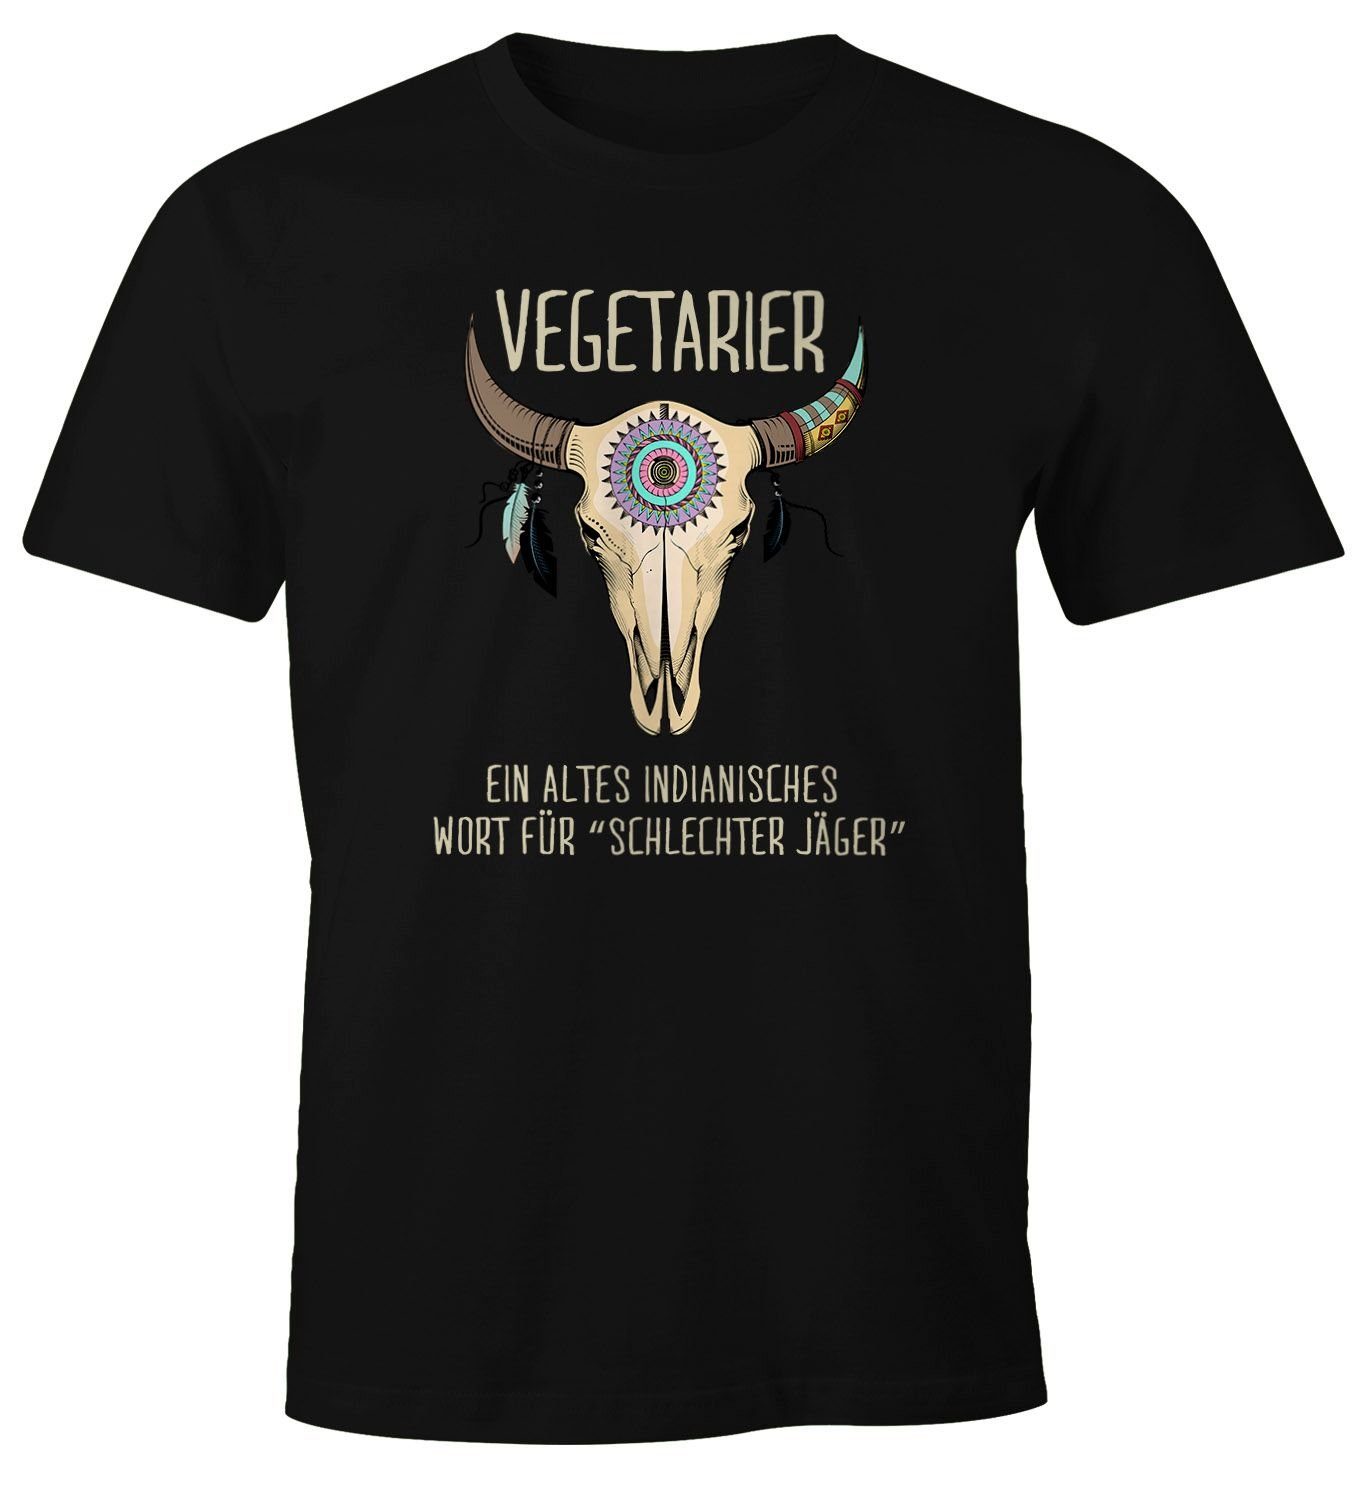 MoonWorks Print-Shirt Herren T-Shirt Vegetarier / Veganer Schlechter Jäger Spruch Skull lustig Fun-Shirt Moonworks® mit Print Vegetarier schwarz